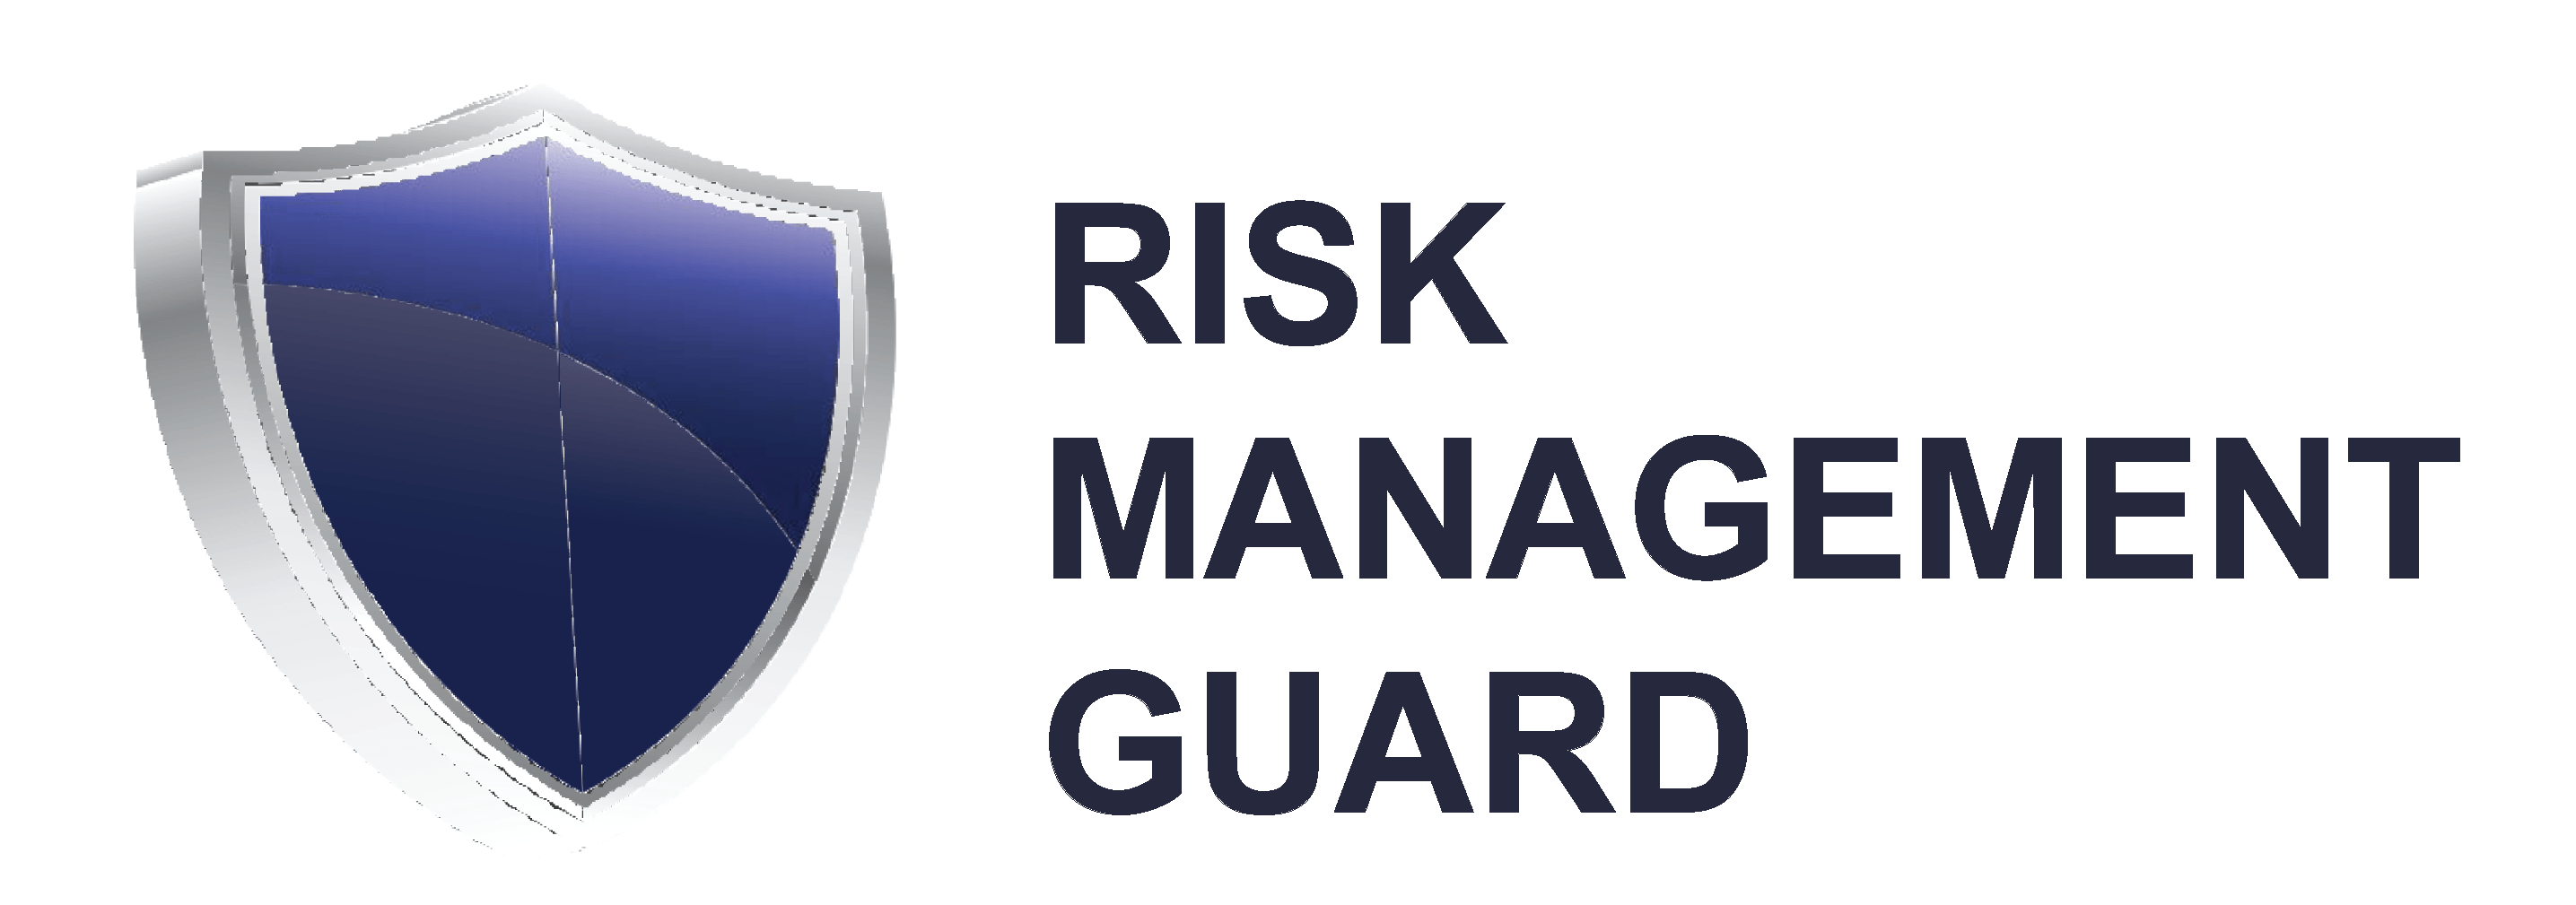 Risk Management Logo - Risk Management Guard